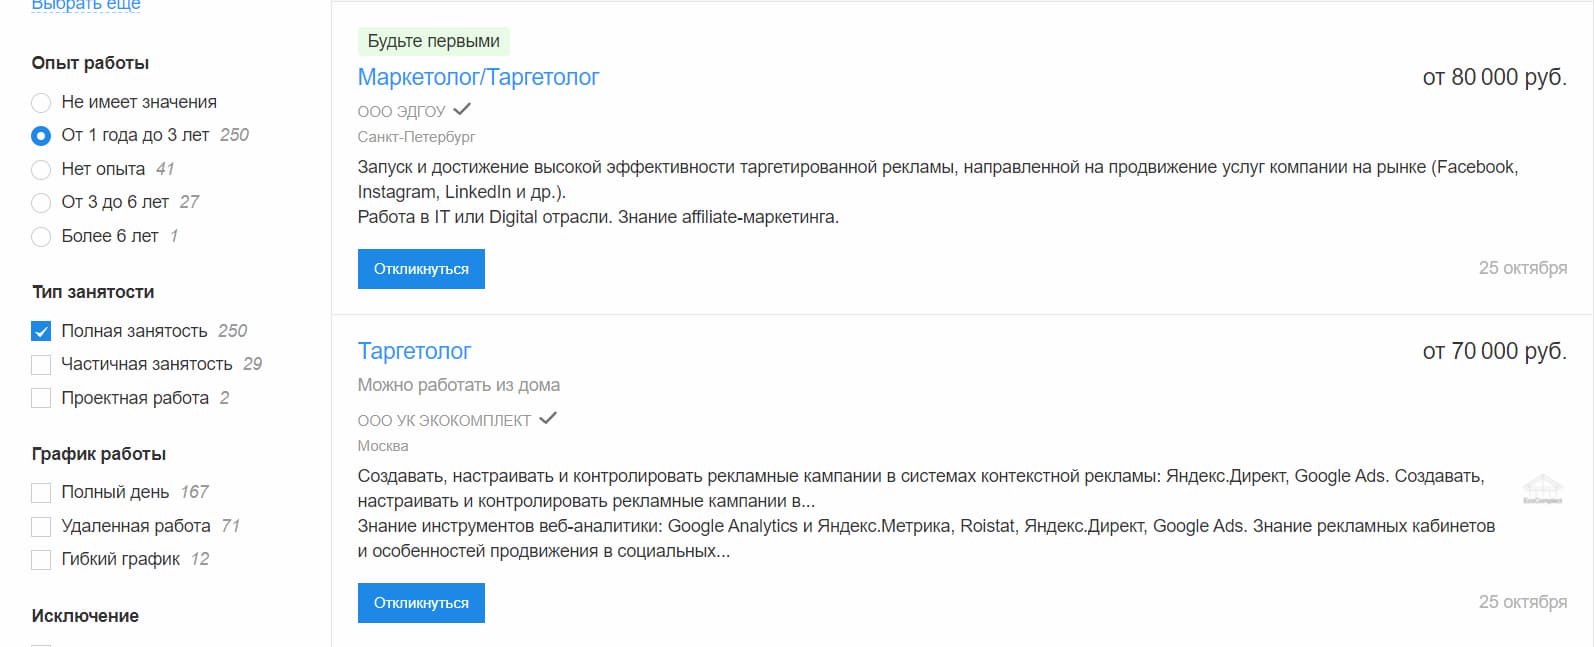 На hh.ru больше вакансий на полную занятость, если хотите проектную работу — ищите в телеграм-каналах